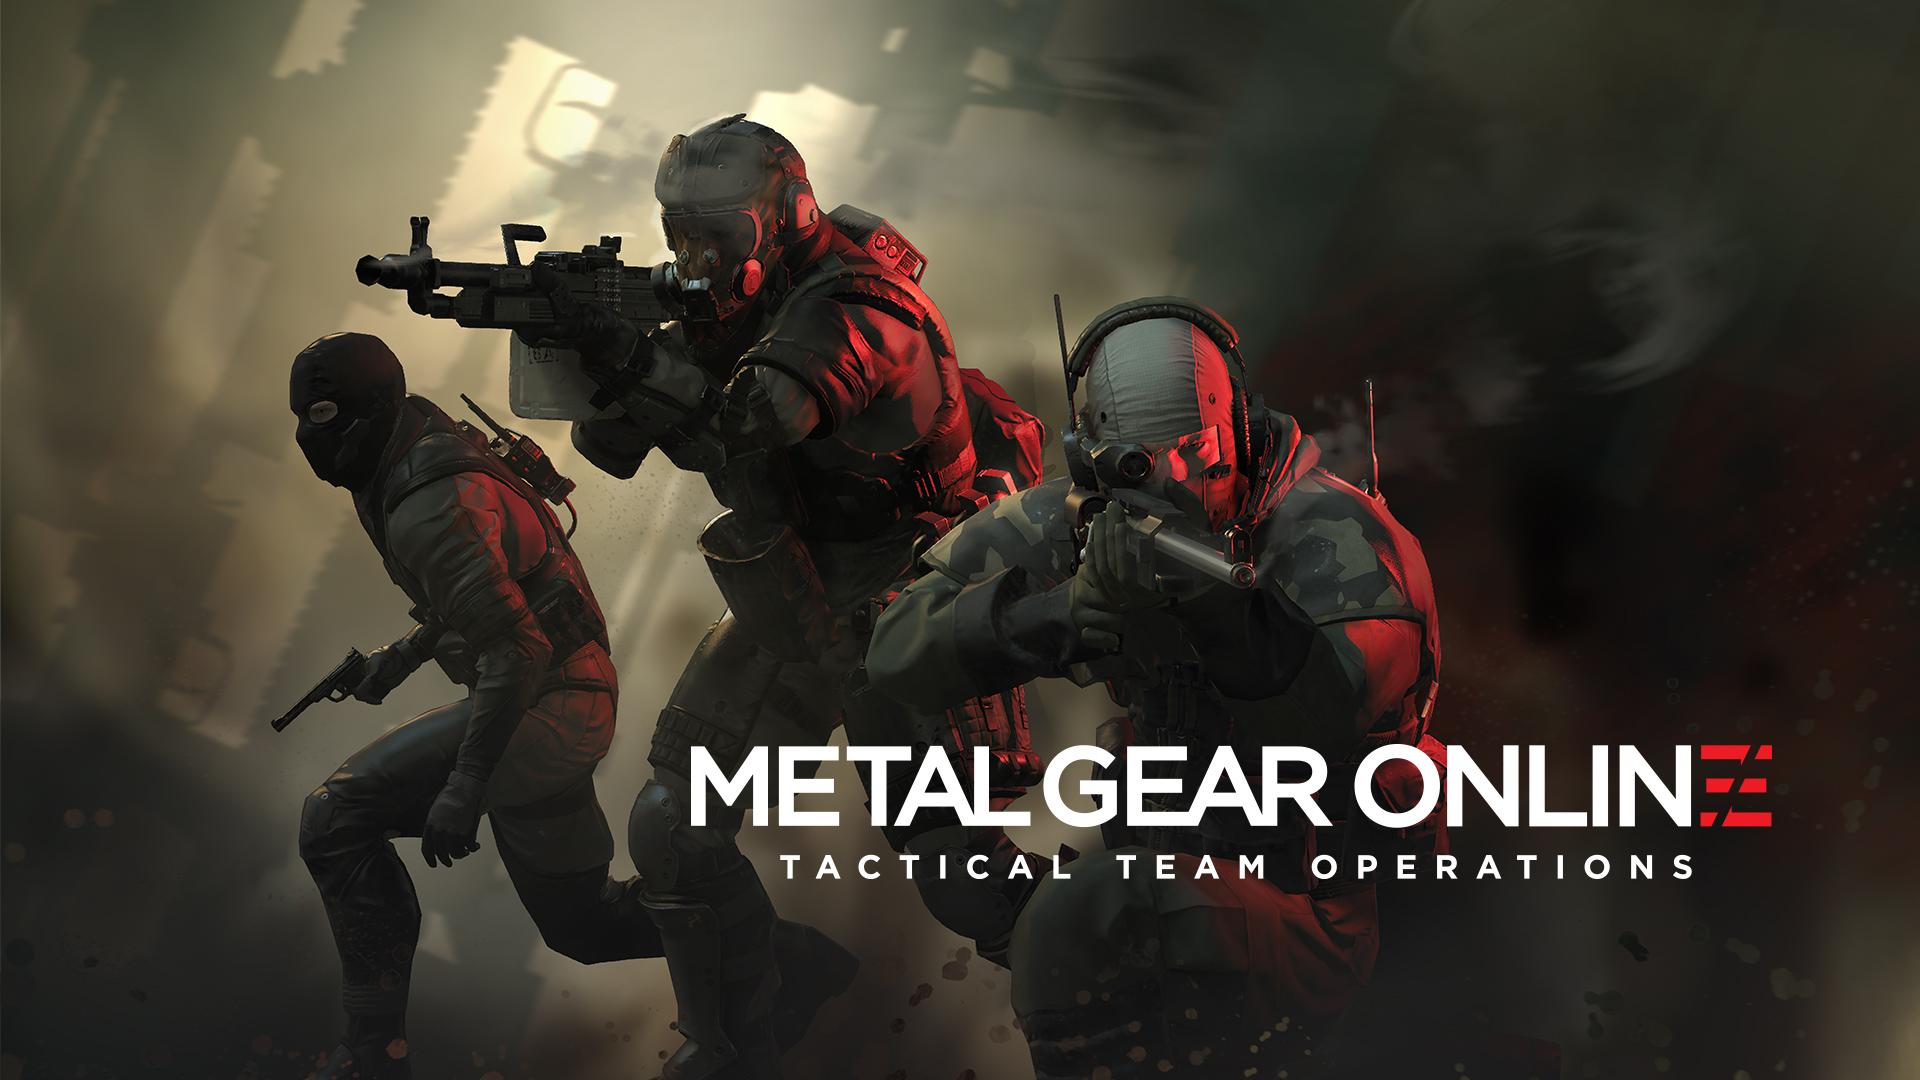 Metal Gear Online dính lỗi nghiêm trọng ngay khi đặt chân lên PC